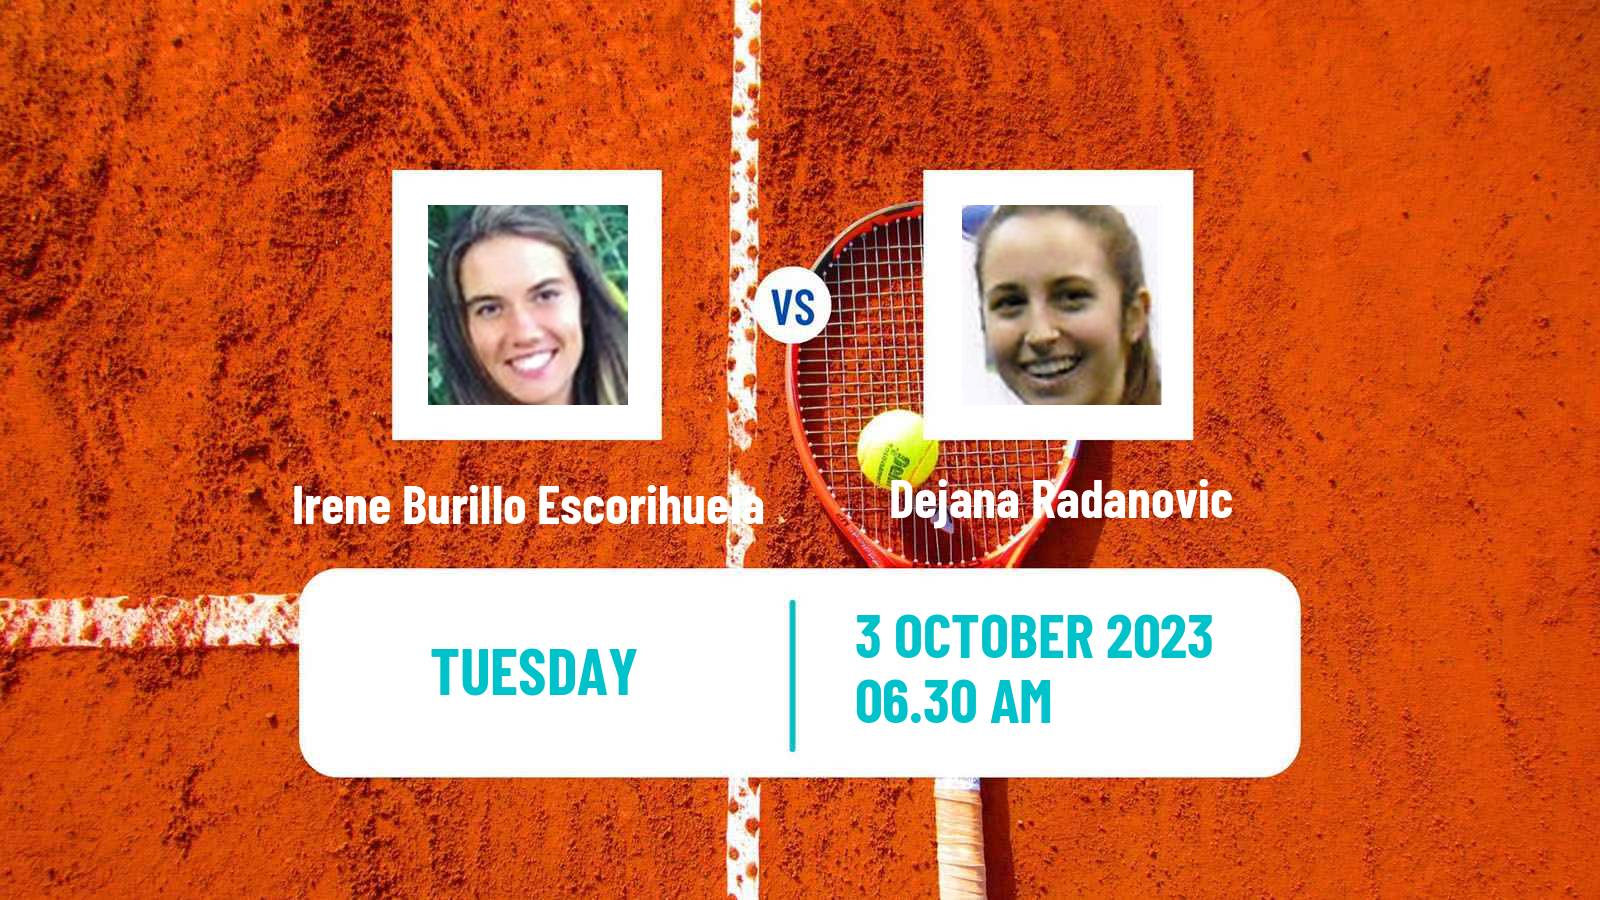 Tennis ITF W40 Lisbon Women Irene Burillo Escorihuela - Dejana Radanovic